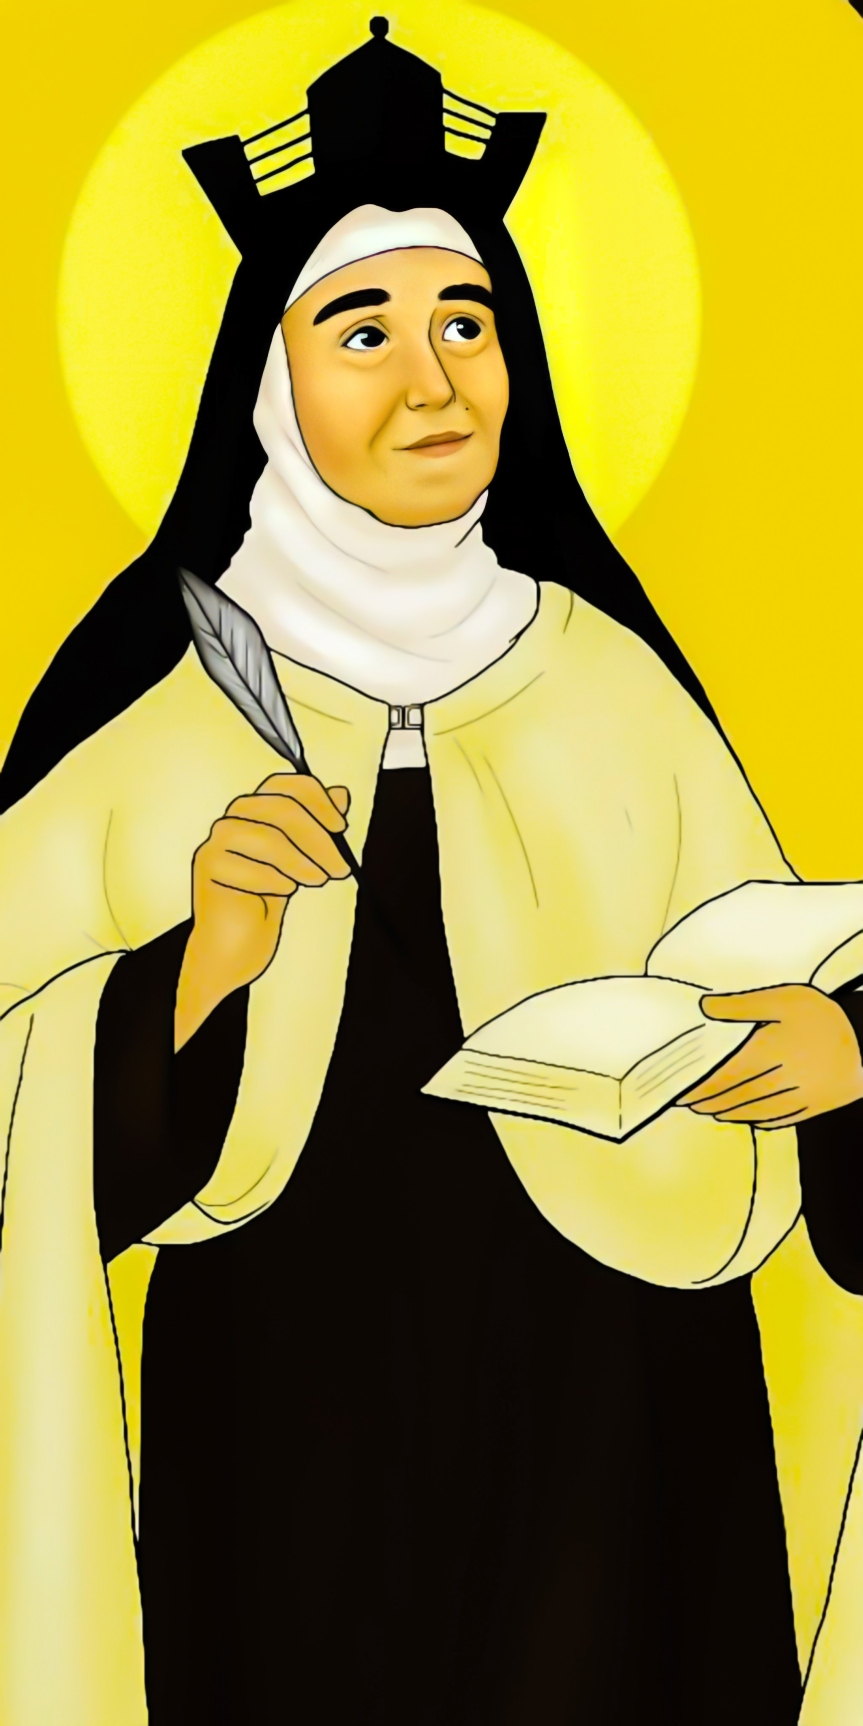 St Teresa of Avila Illustration Art